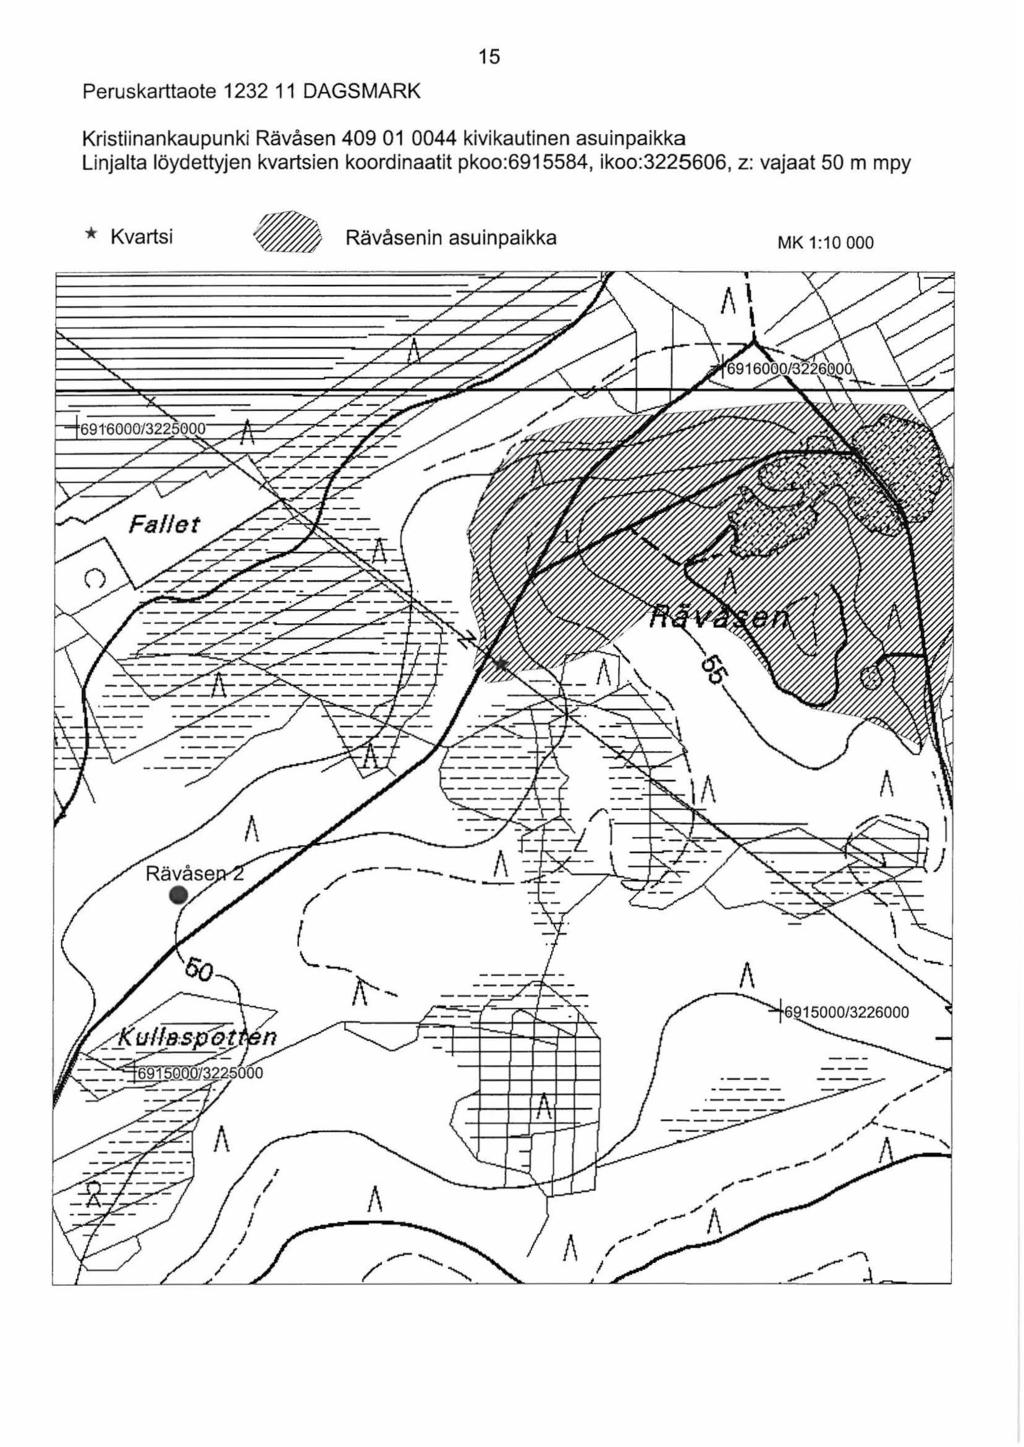 Peruskarttaote 1232 11 DAGSMARK 15 Kristiinankaupunki Rävåsen 409 01 0044 kivikautinenasuinpaikka Linjalta löydettyjen